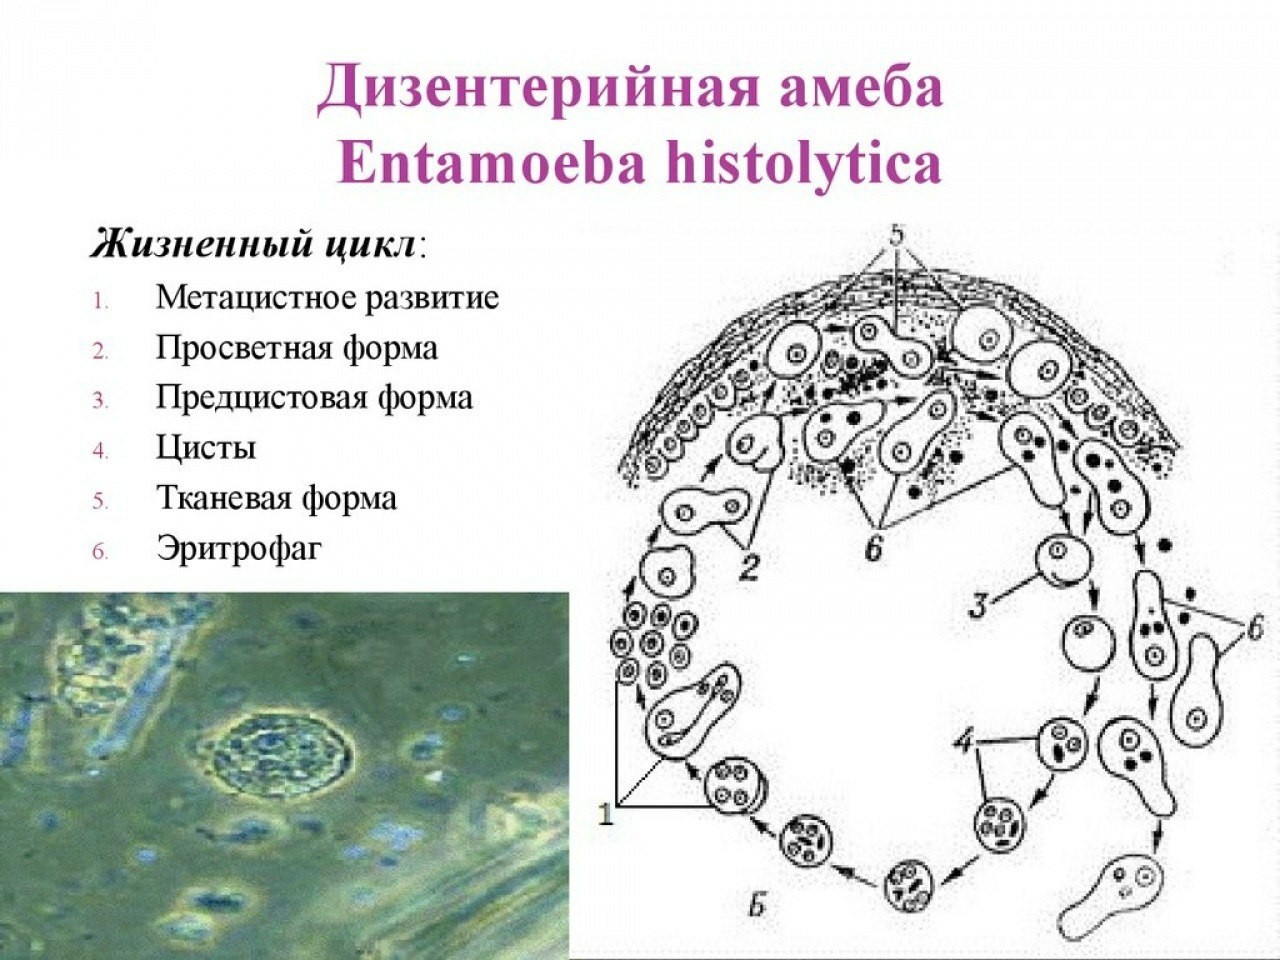 Жизненный цикл дизентерийной амебы схема. Жизненный цикл дизентерийной амёбы. (Entamoeba histolytica).. Цикл развития дизентерийной амебы схема. Схема жизненного цикла развития дизентерийной амебы. Жизненные формы амебы